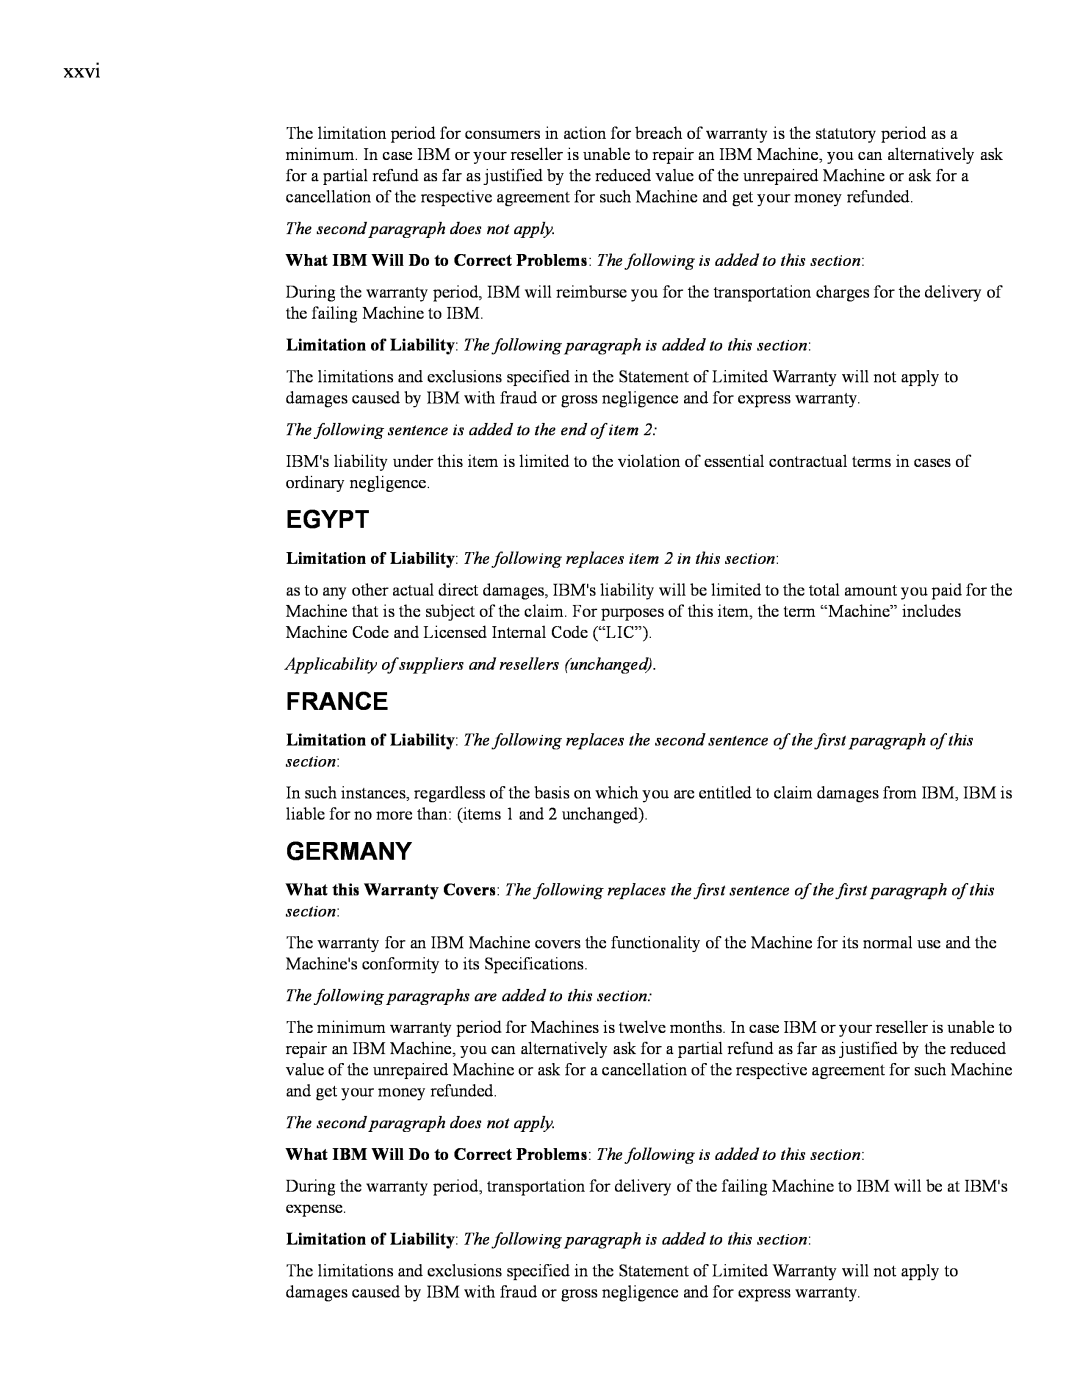 IBM 24R9718 IB manual Egypt, France, Germany 